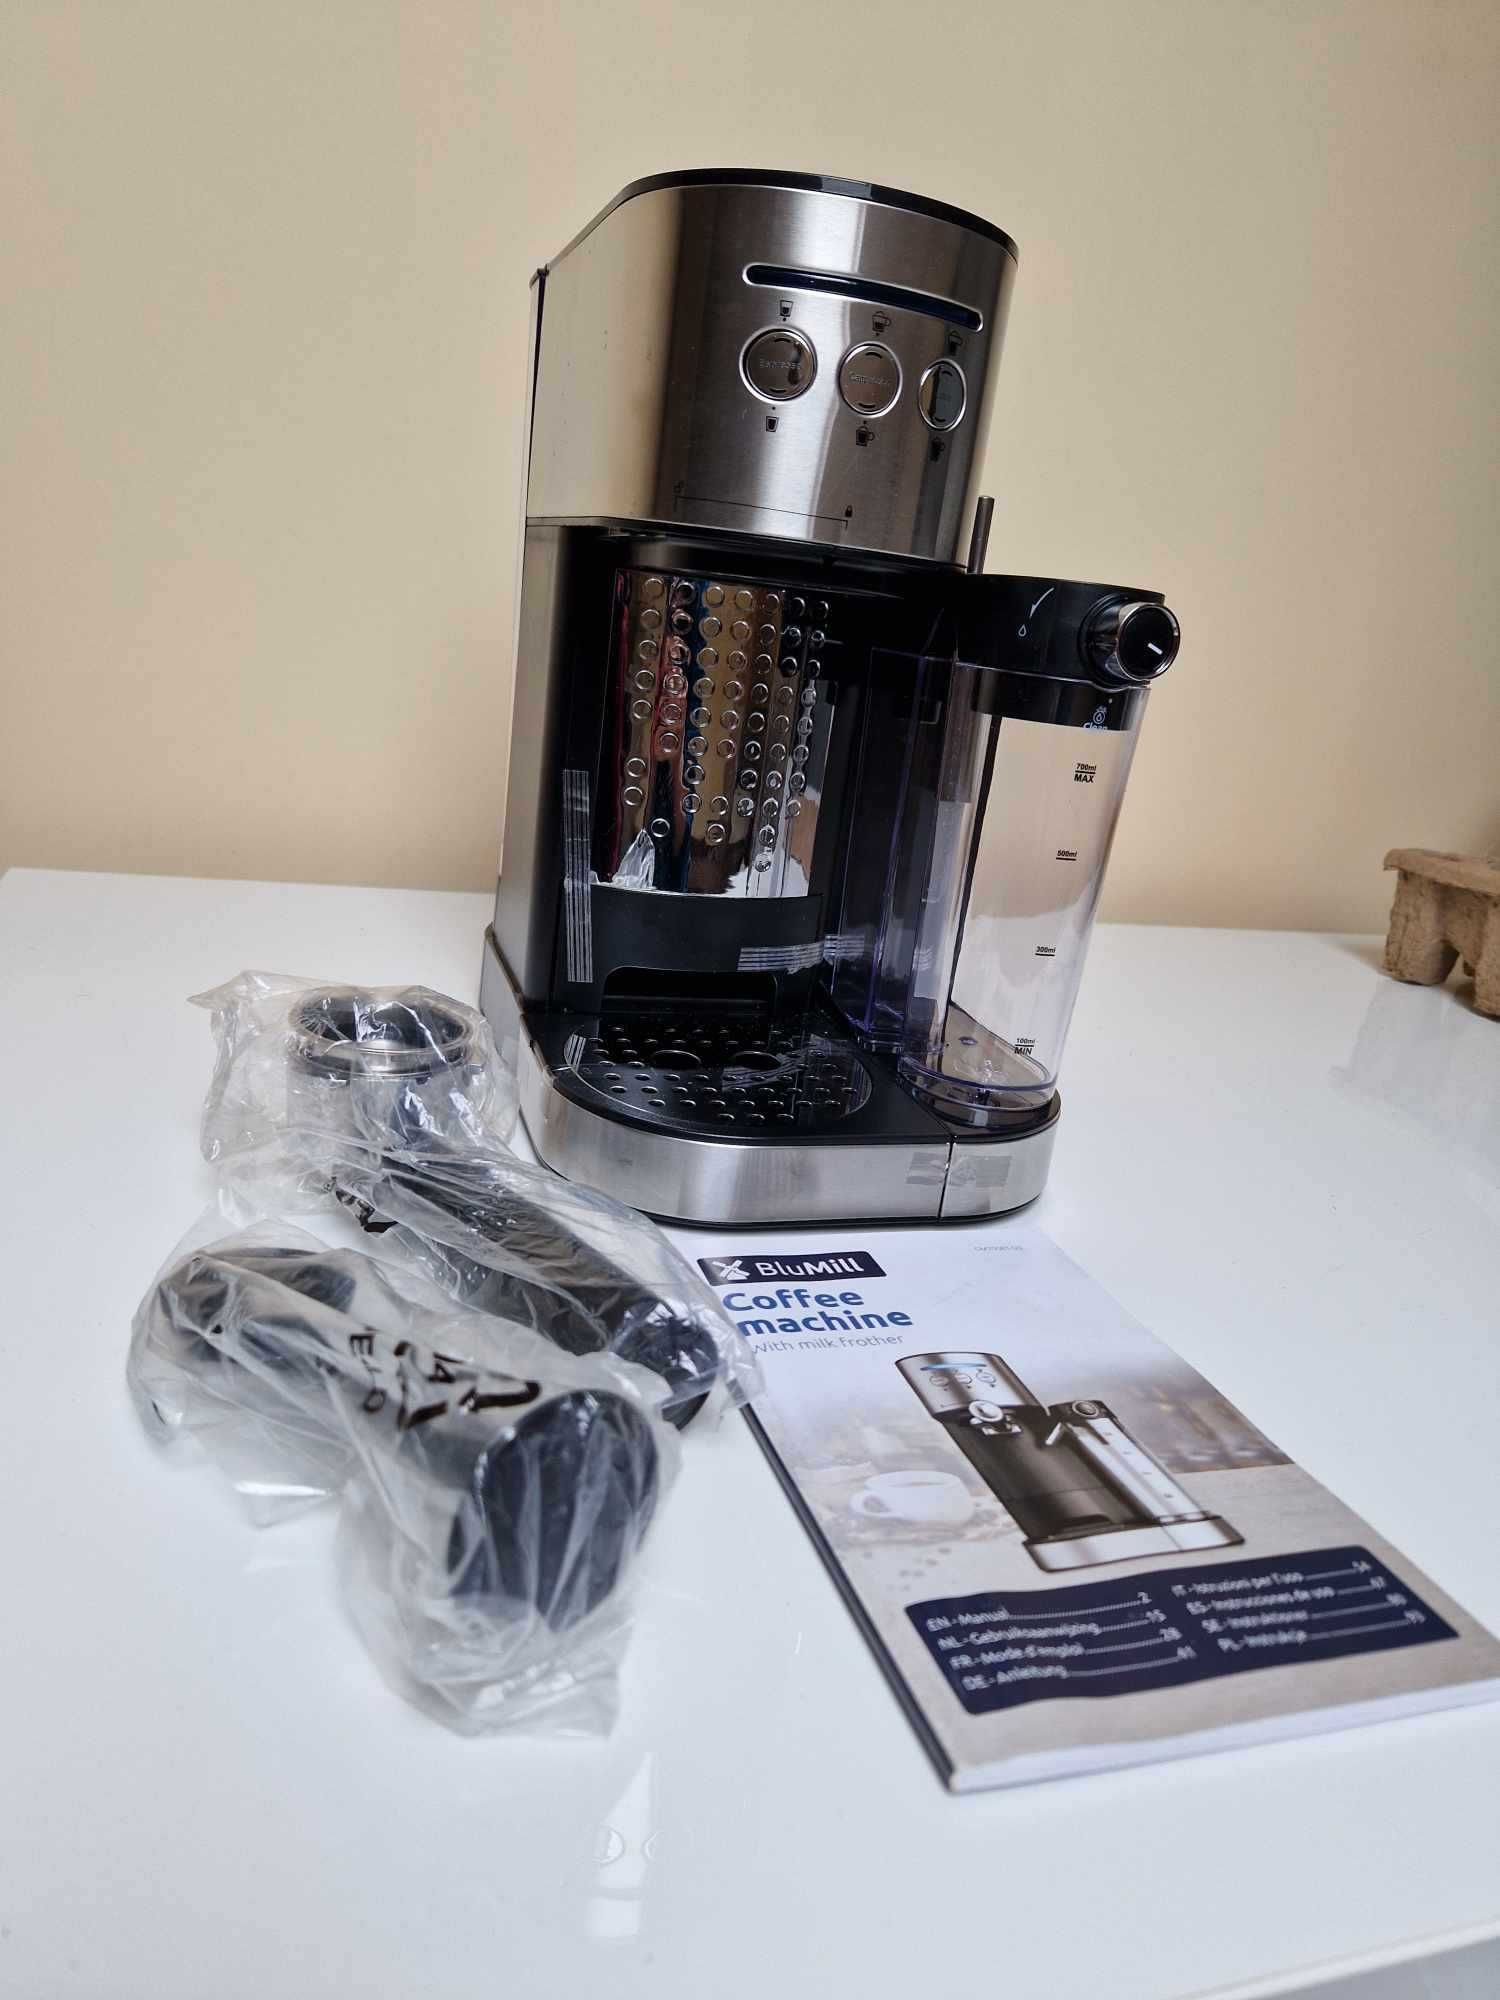 Kolbowy ekspres ciśnieniowy BluMill Caffee machine 1470 W